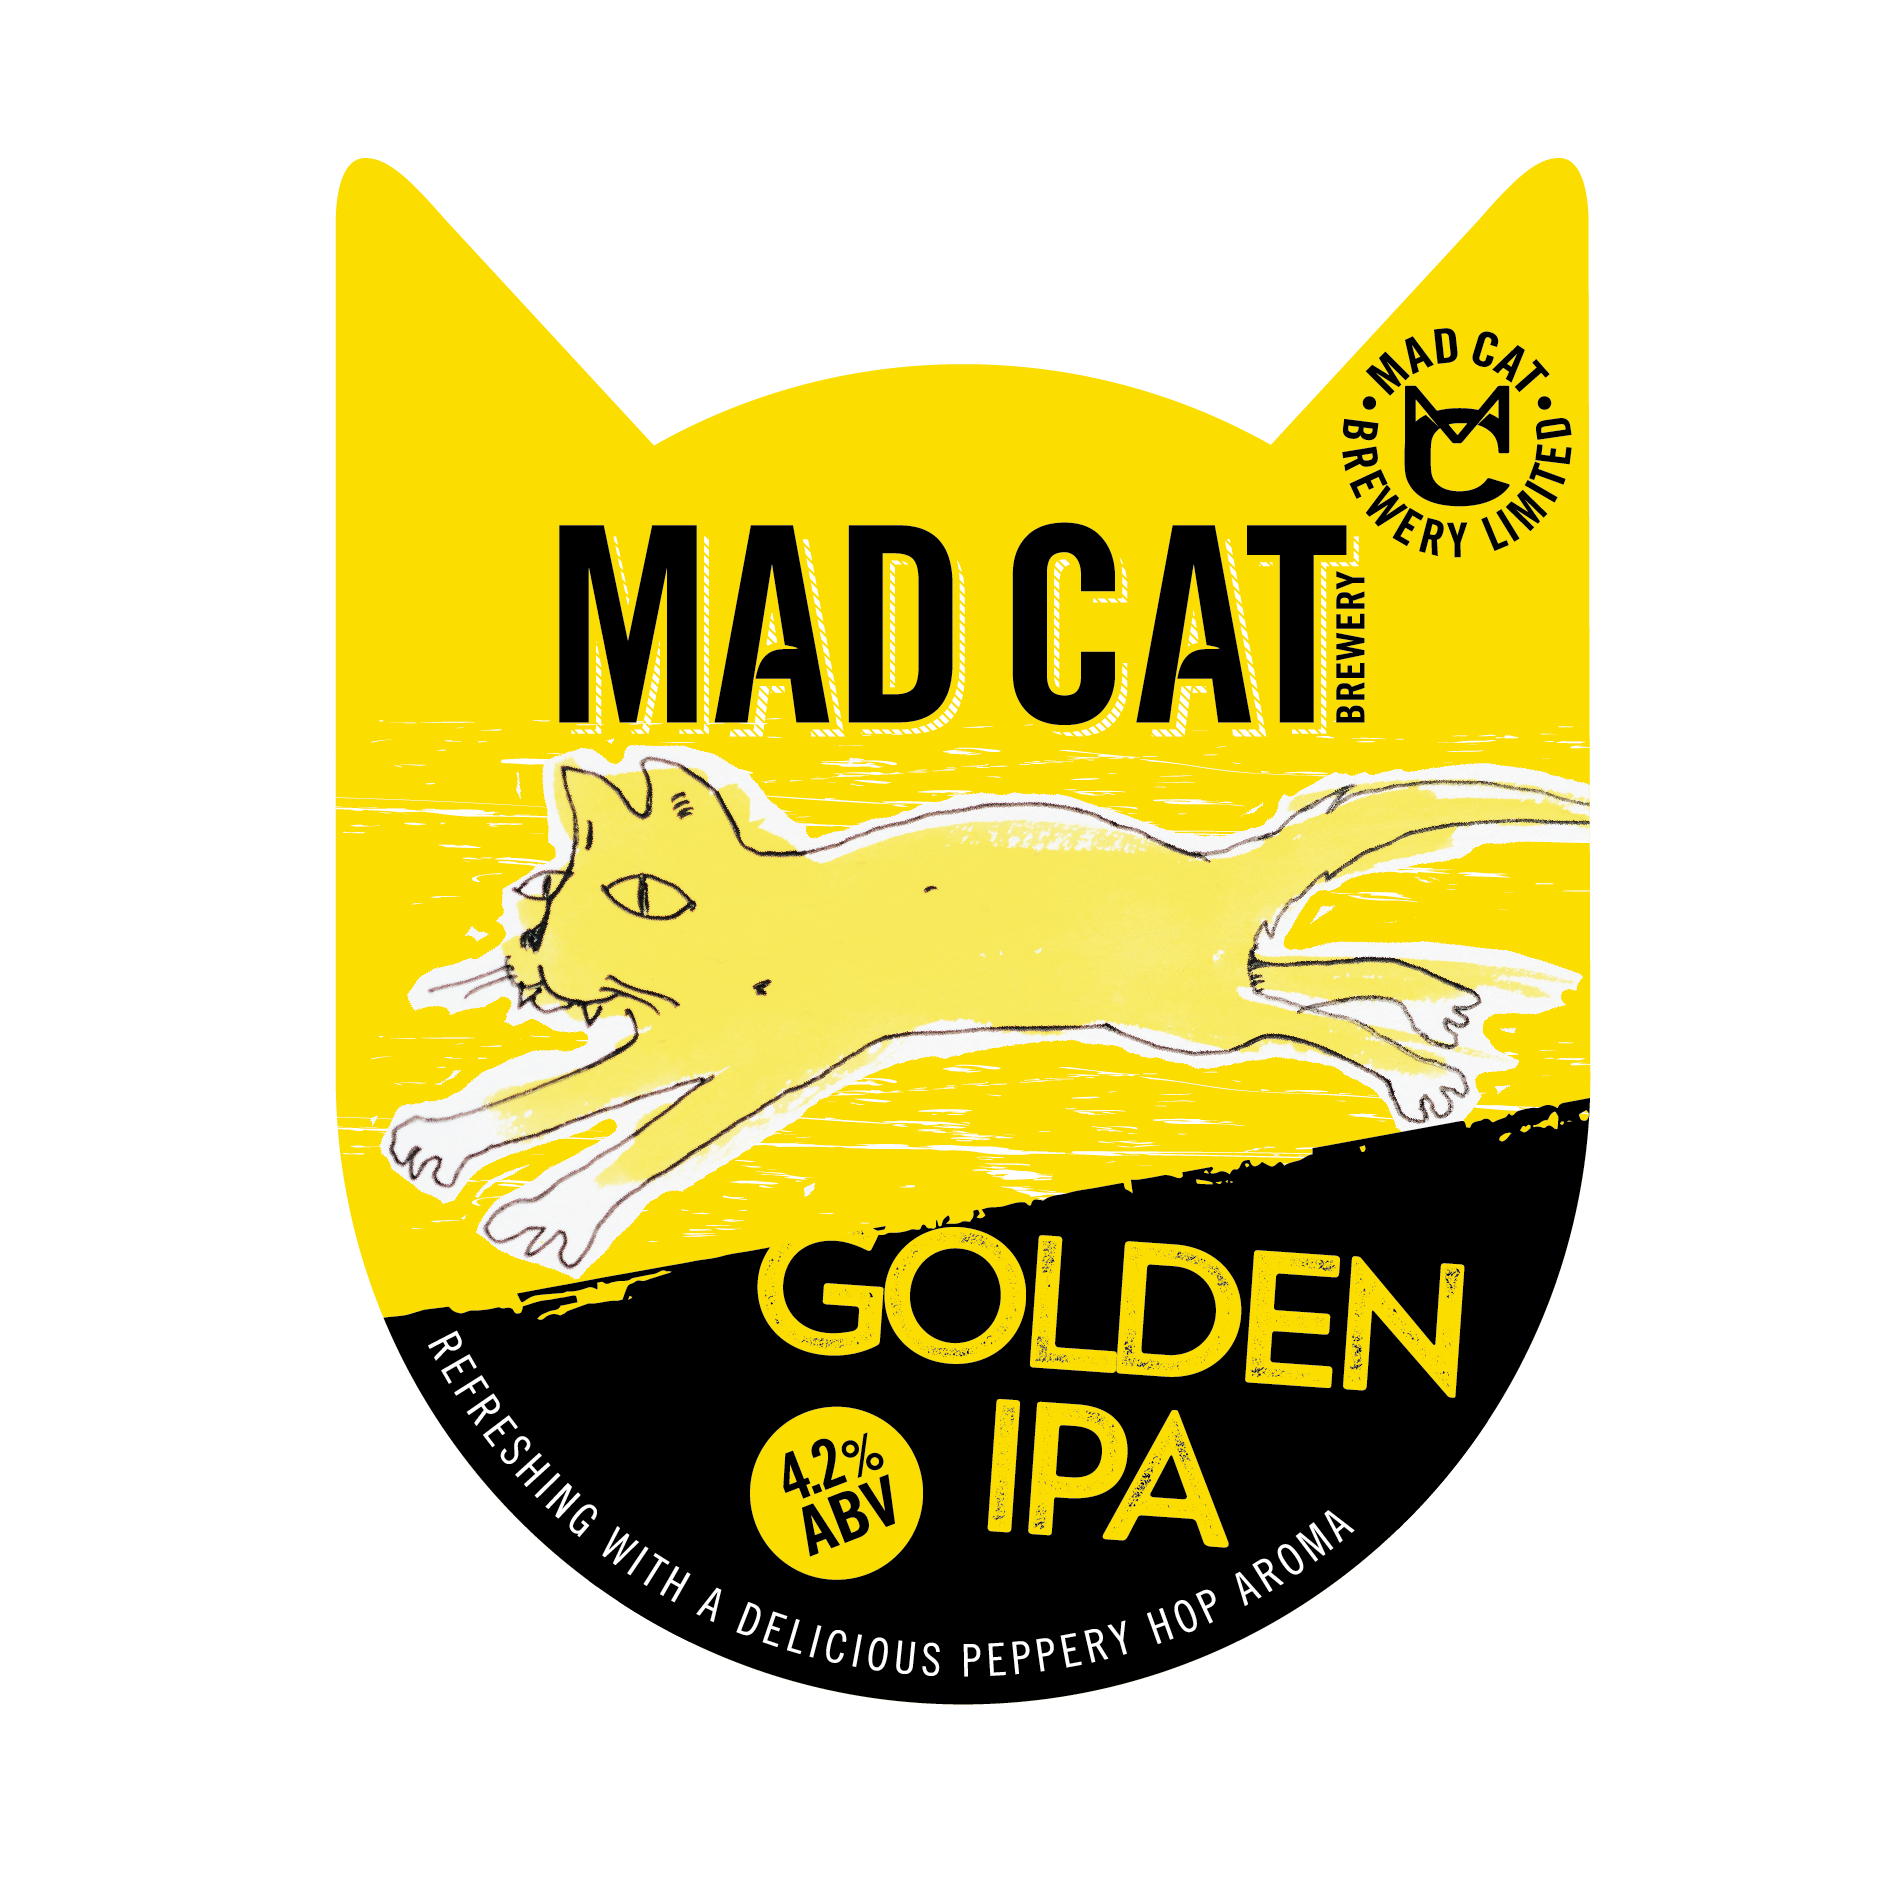 Golden IPA pump clip mad cat ales